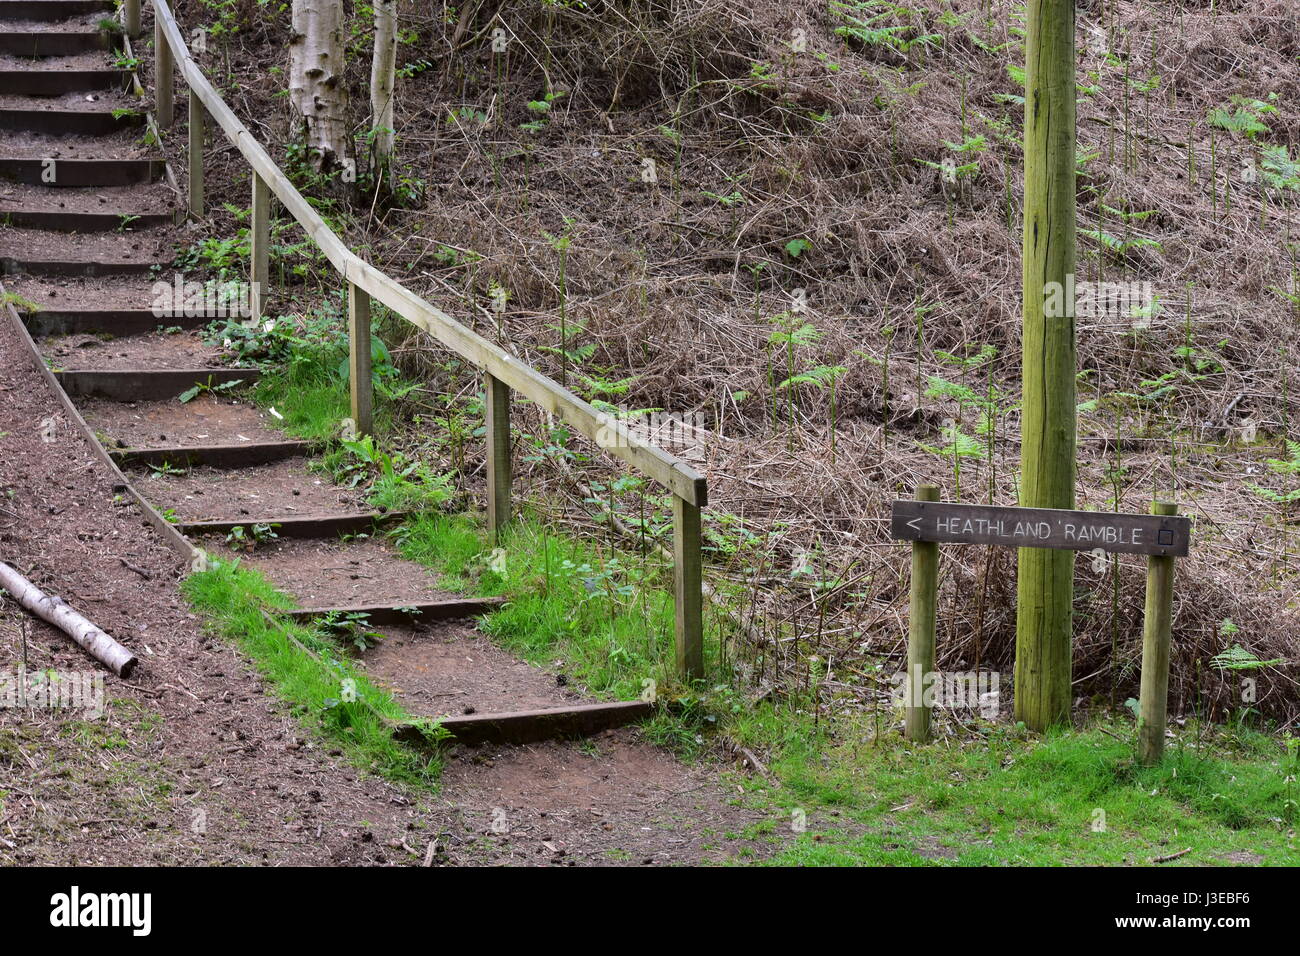 Heathland ramble sign and steps at Dersingham bog nature reserve, Dersingham, Norfolk, Unitied Kingdom Stock Photo